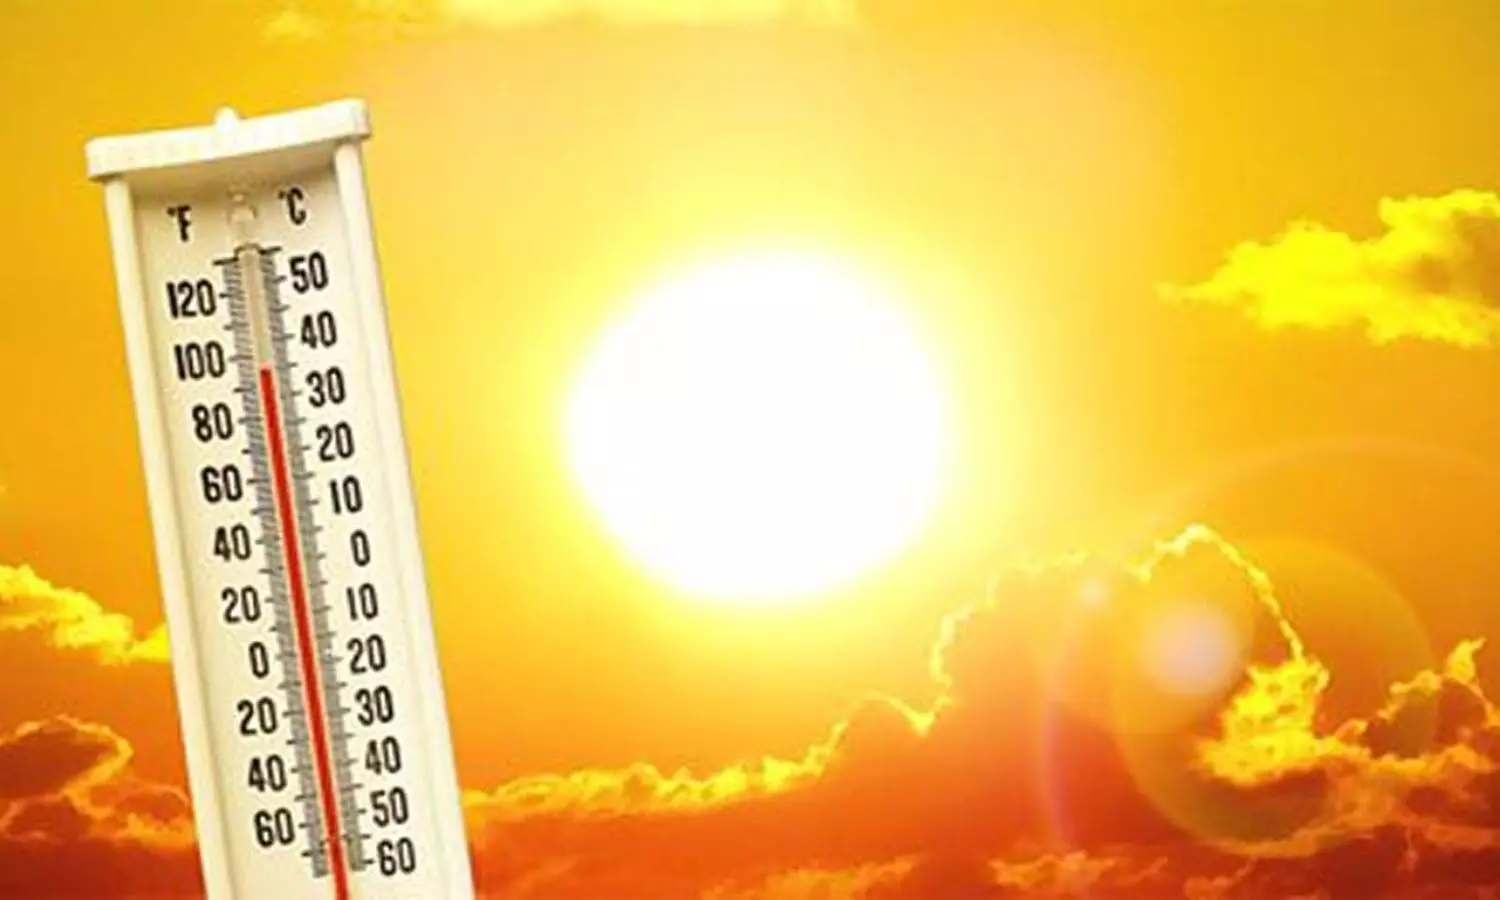 Severe heatwave warning for Telangana, Andhra Pradesh, rural areas sizzling more than urban